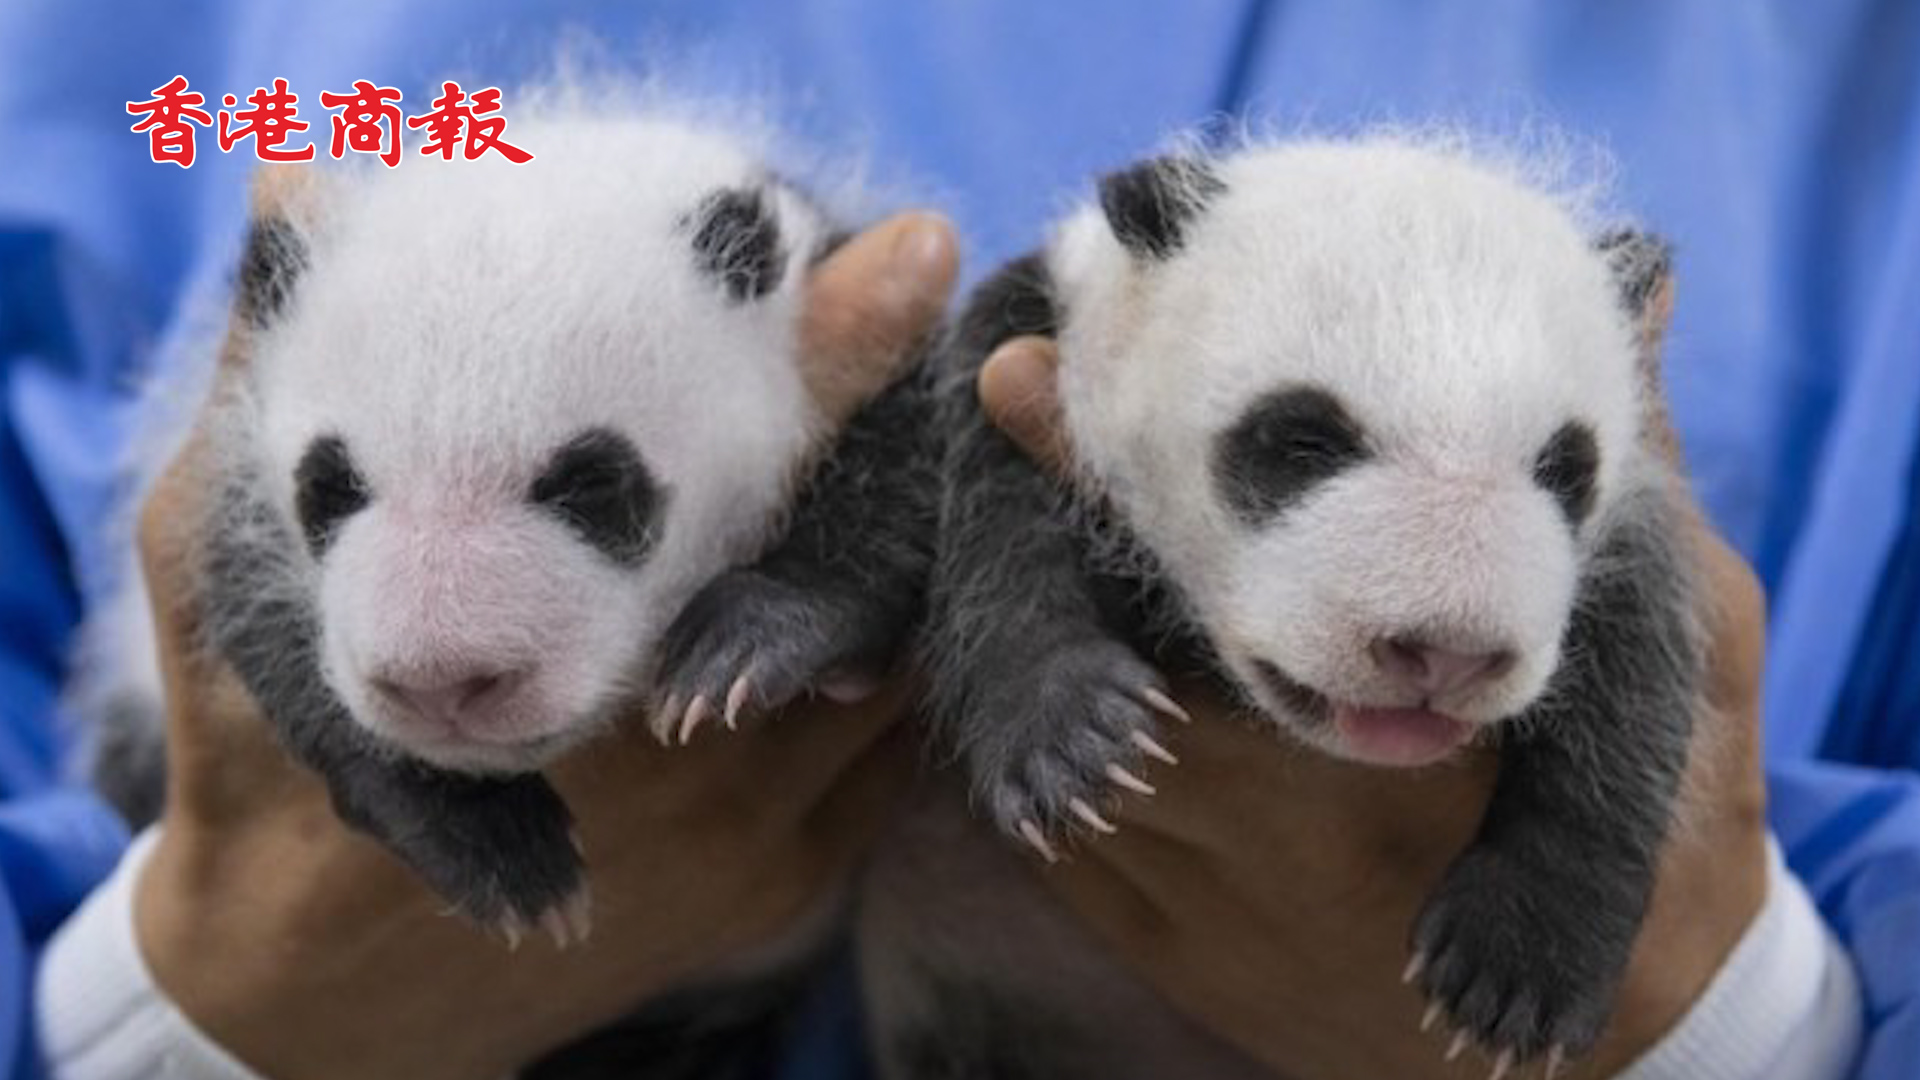 有片丨在韓大熊貓雙胞胎滿月照來了 老二吐舌頭賣萌